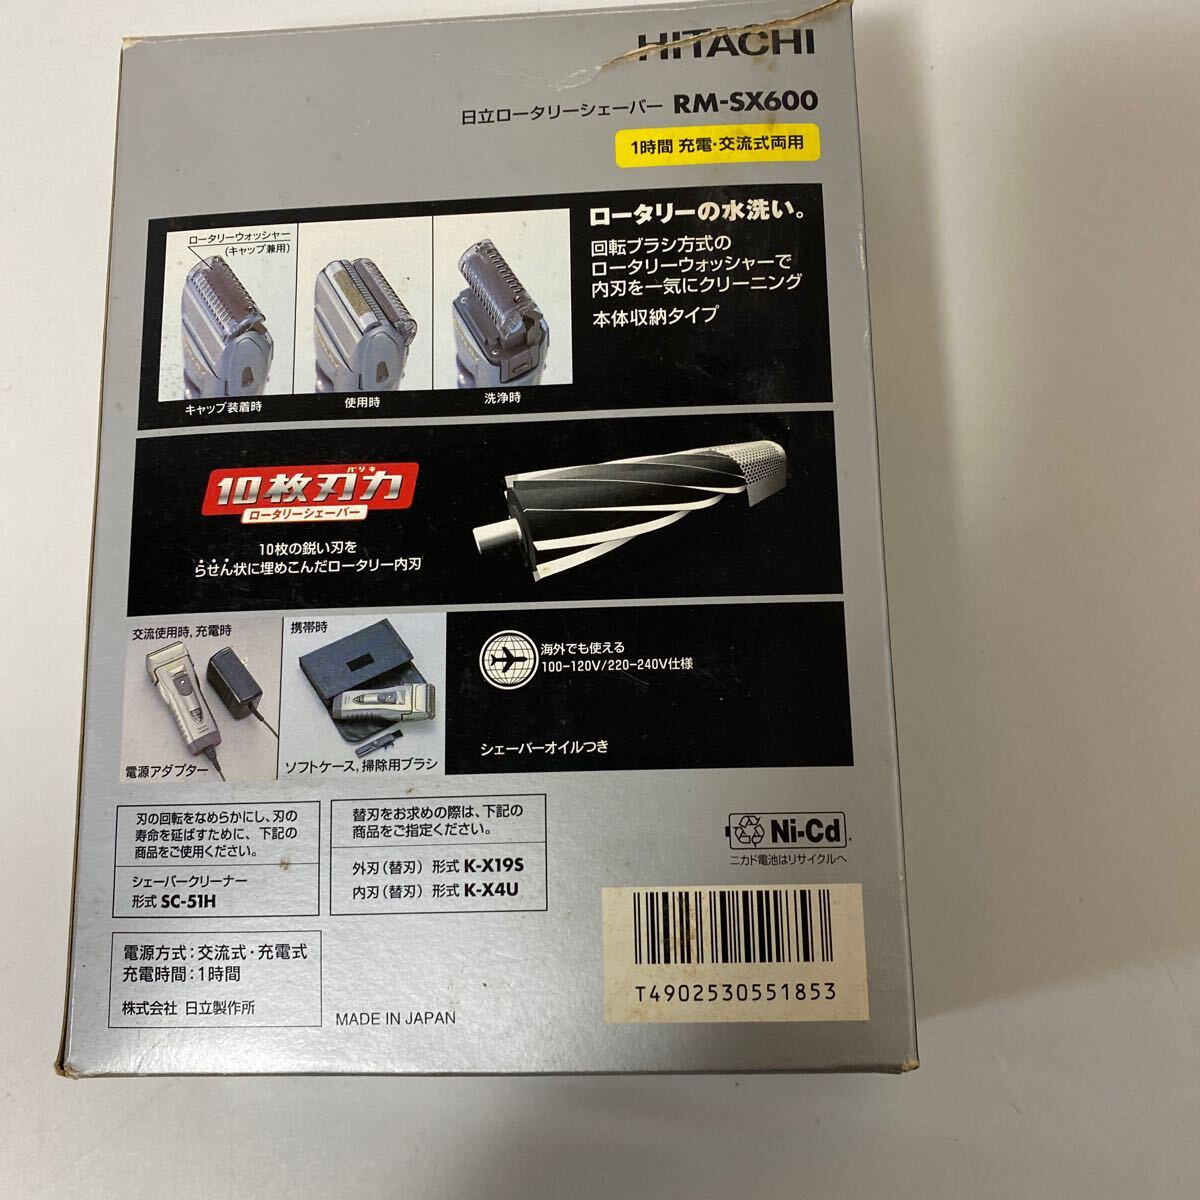 [1 иен старт ] Hitachi роторный бритва RM-SX600 2WAY текущее состояние товар омыватель bru электробритва электризация проверка settled 